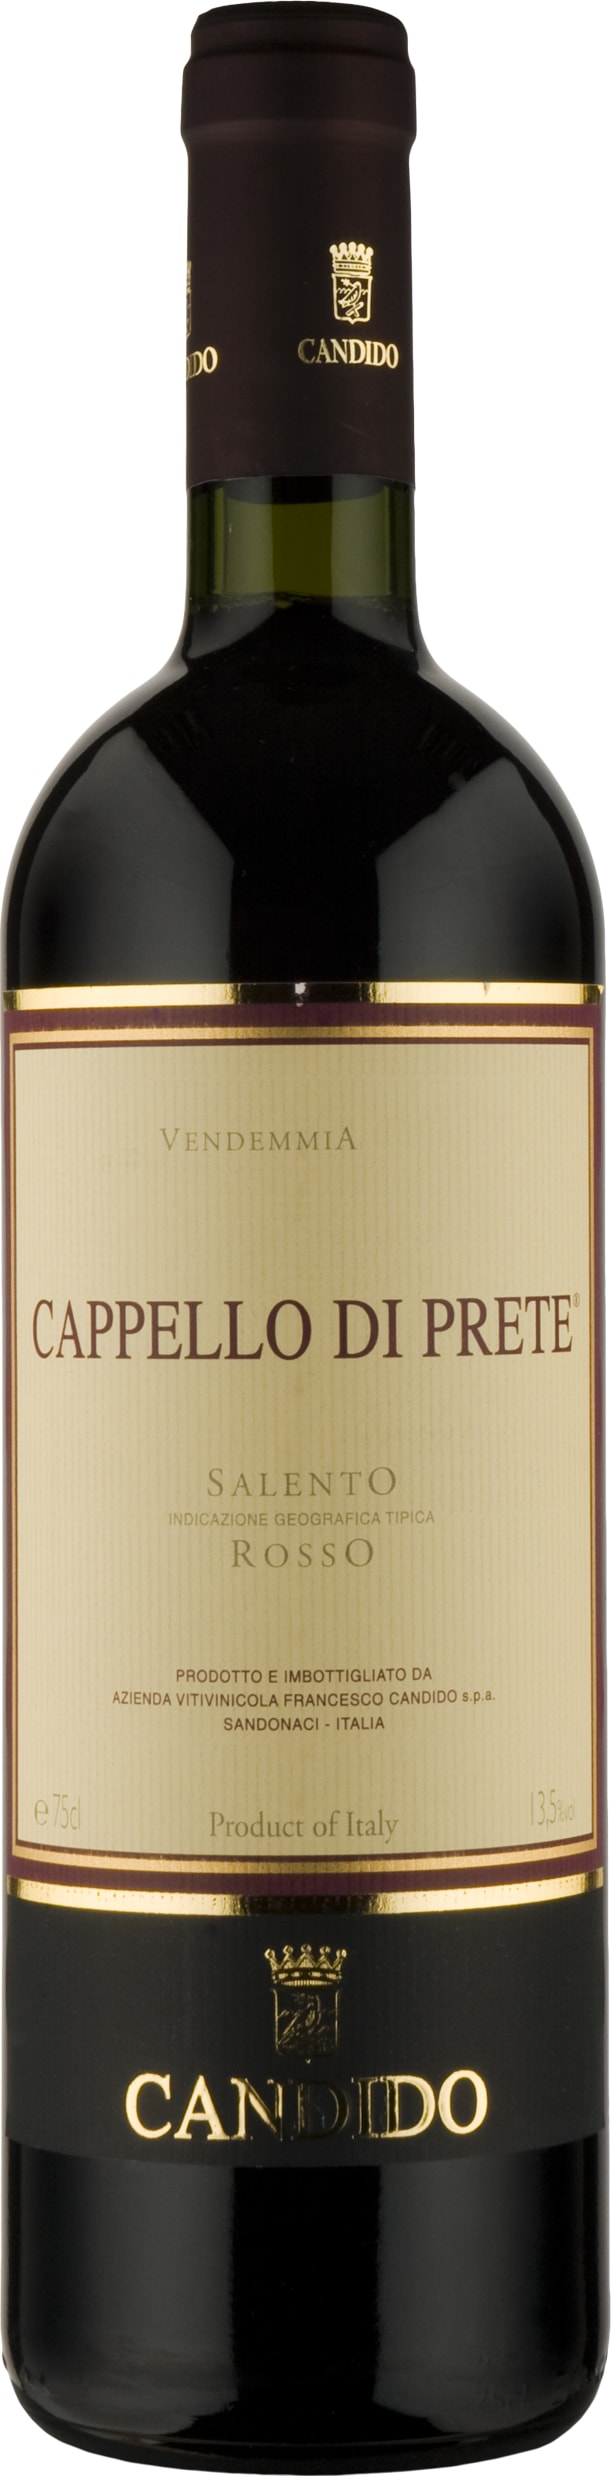 Francesco Candido Cappello di Prete, Rosso del Salento 2019 75cl - Buy Francesco Candido Wines from GREAT WINES DIRECT wine shop